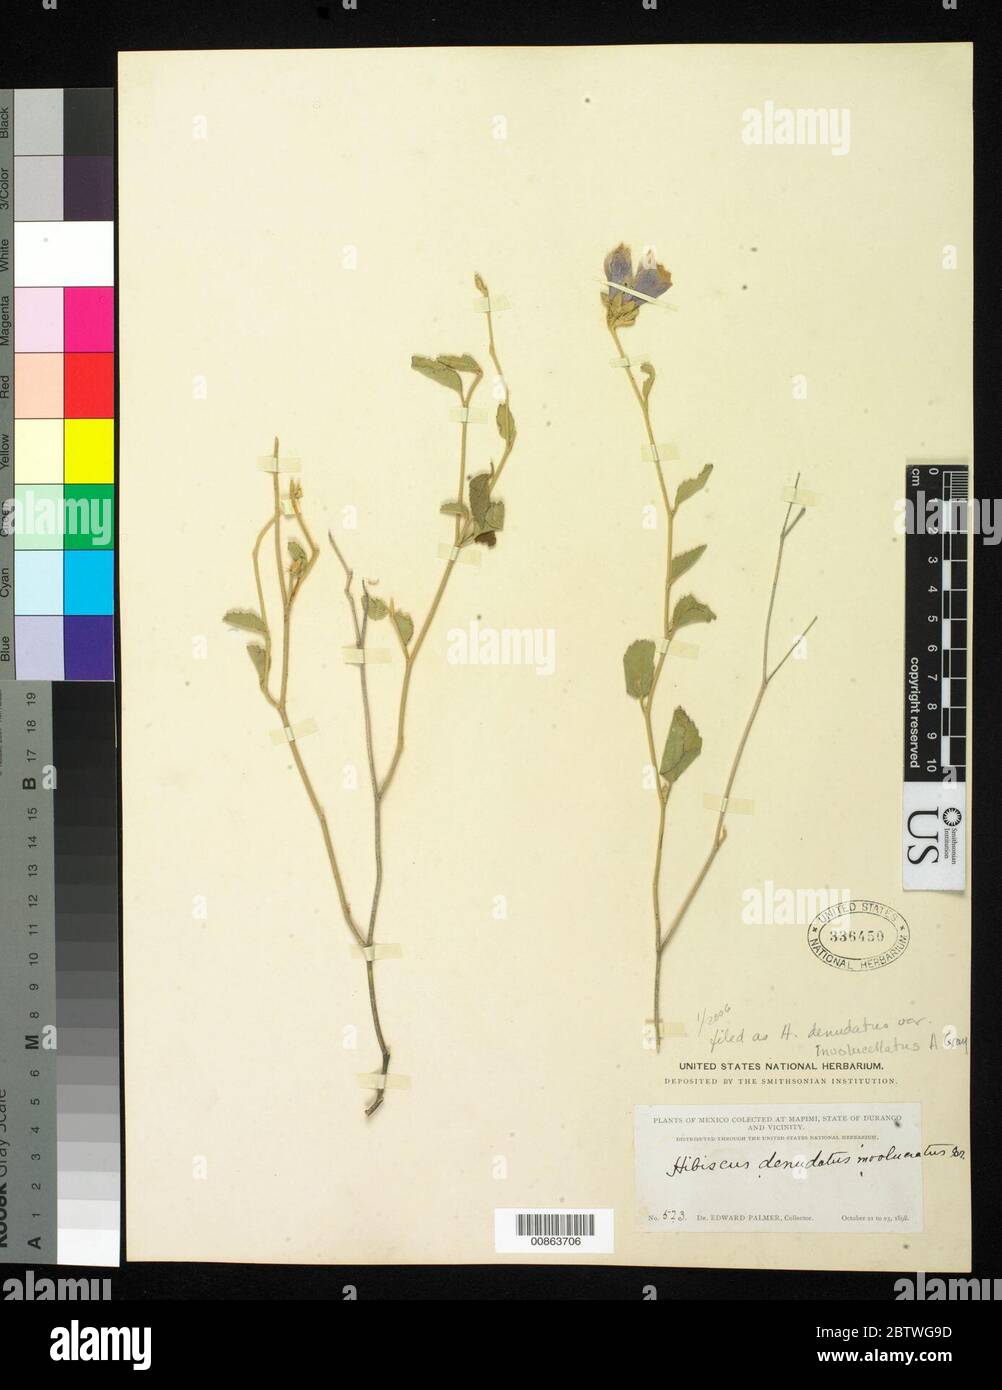 Hibiscus denudatus var involucellatus Benth. Stock Photo